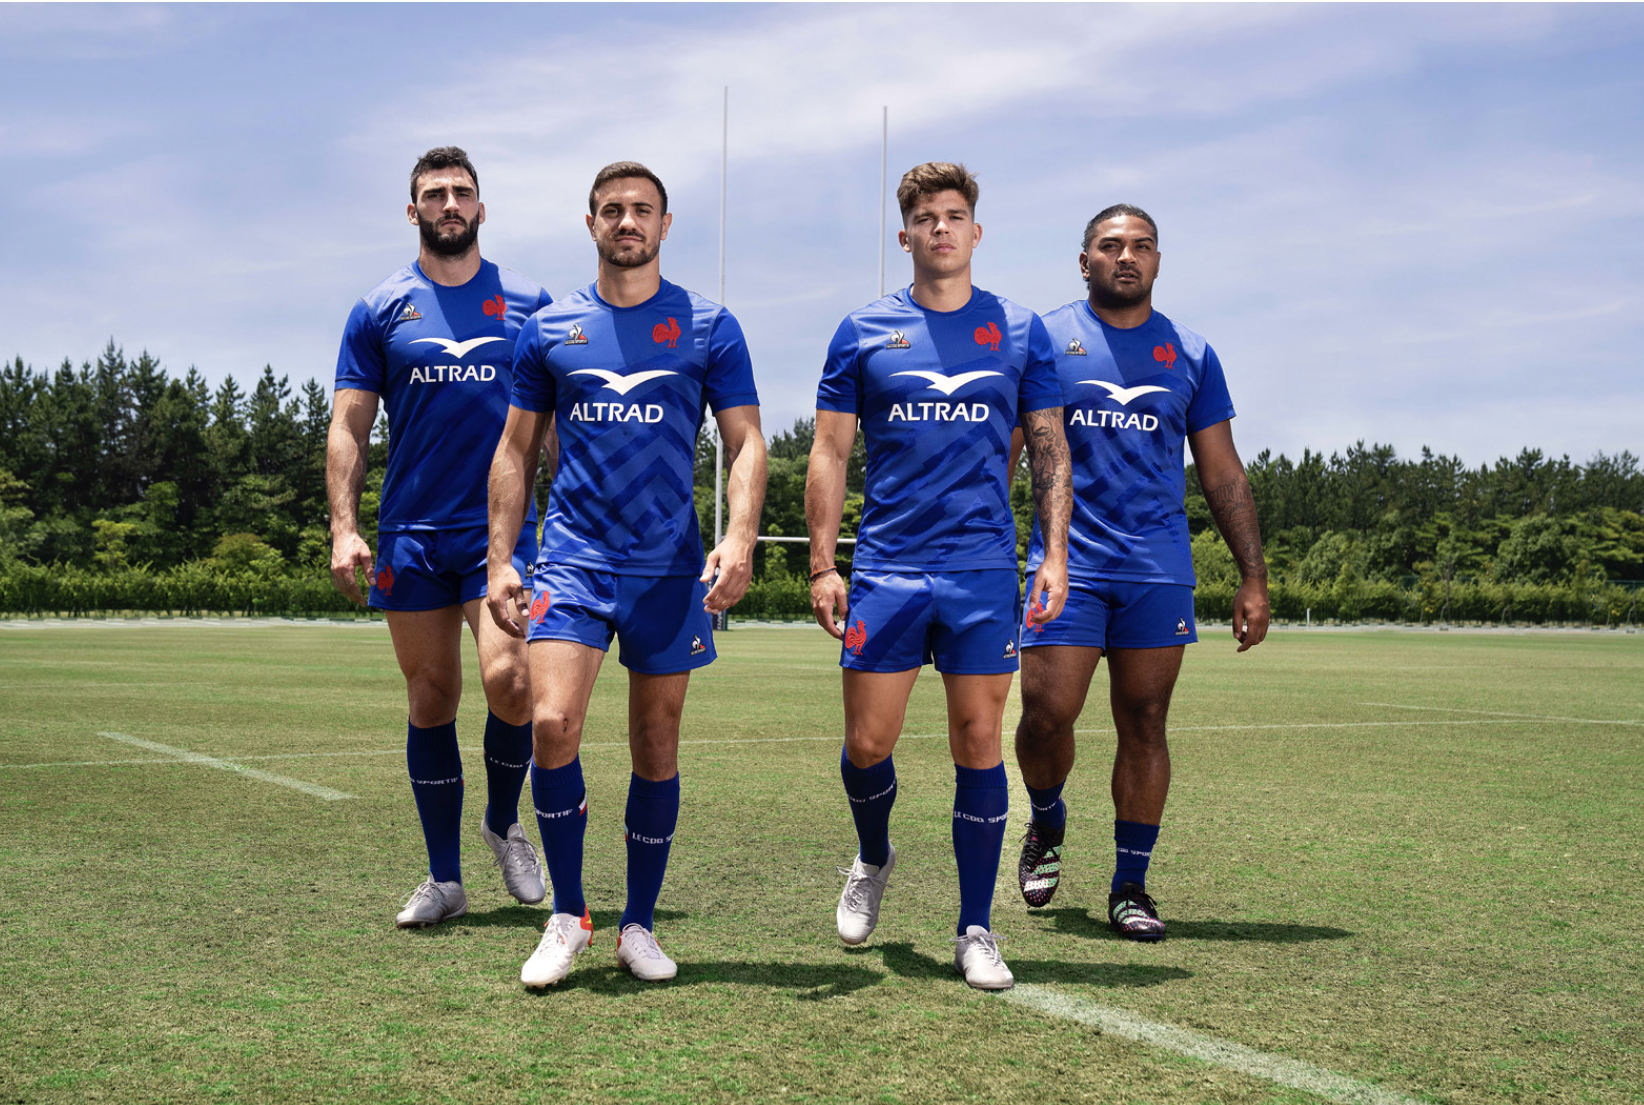 Rugby - Le XV de France dévoile ses nouveaux maillots 2022-2023 (le coq  sportif) lors d'un live Twitch 